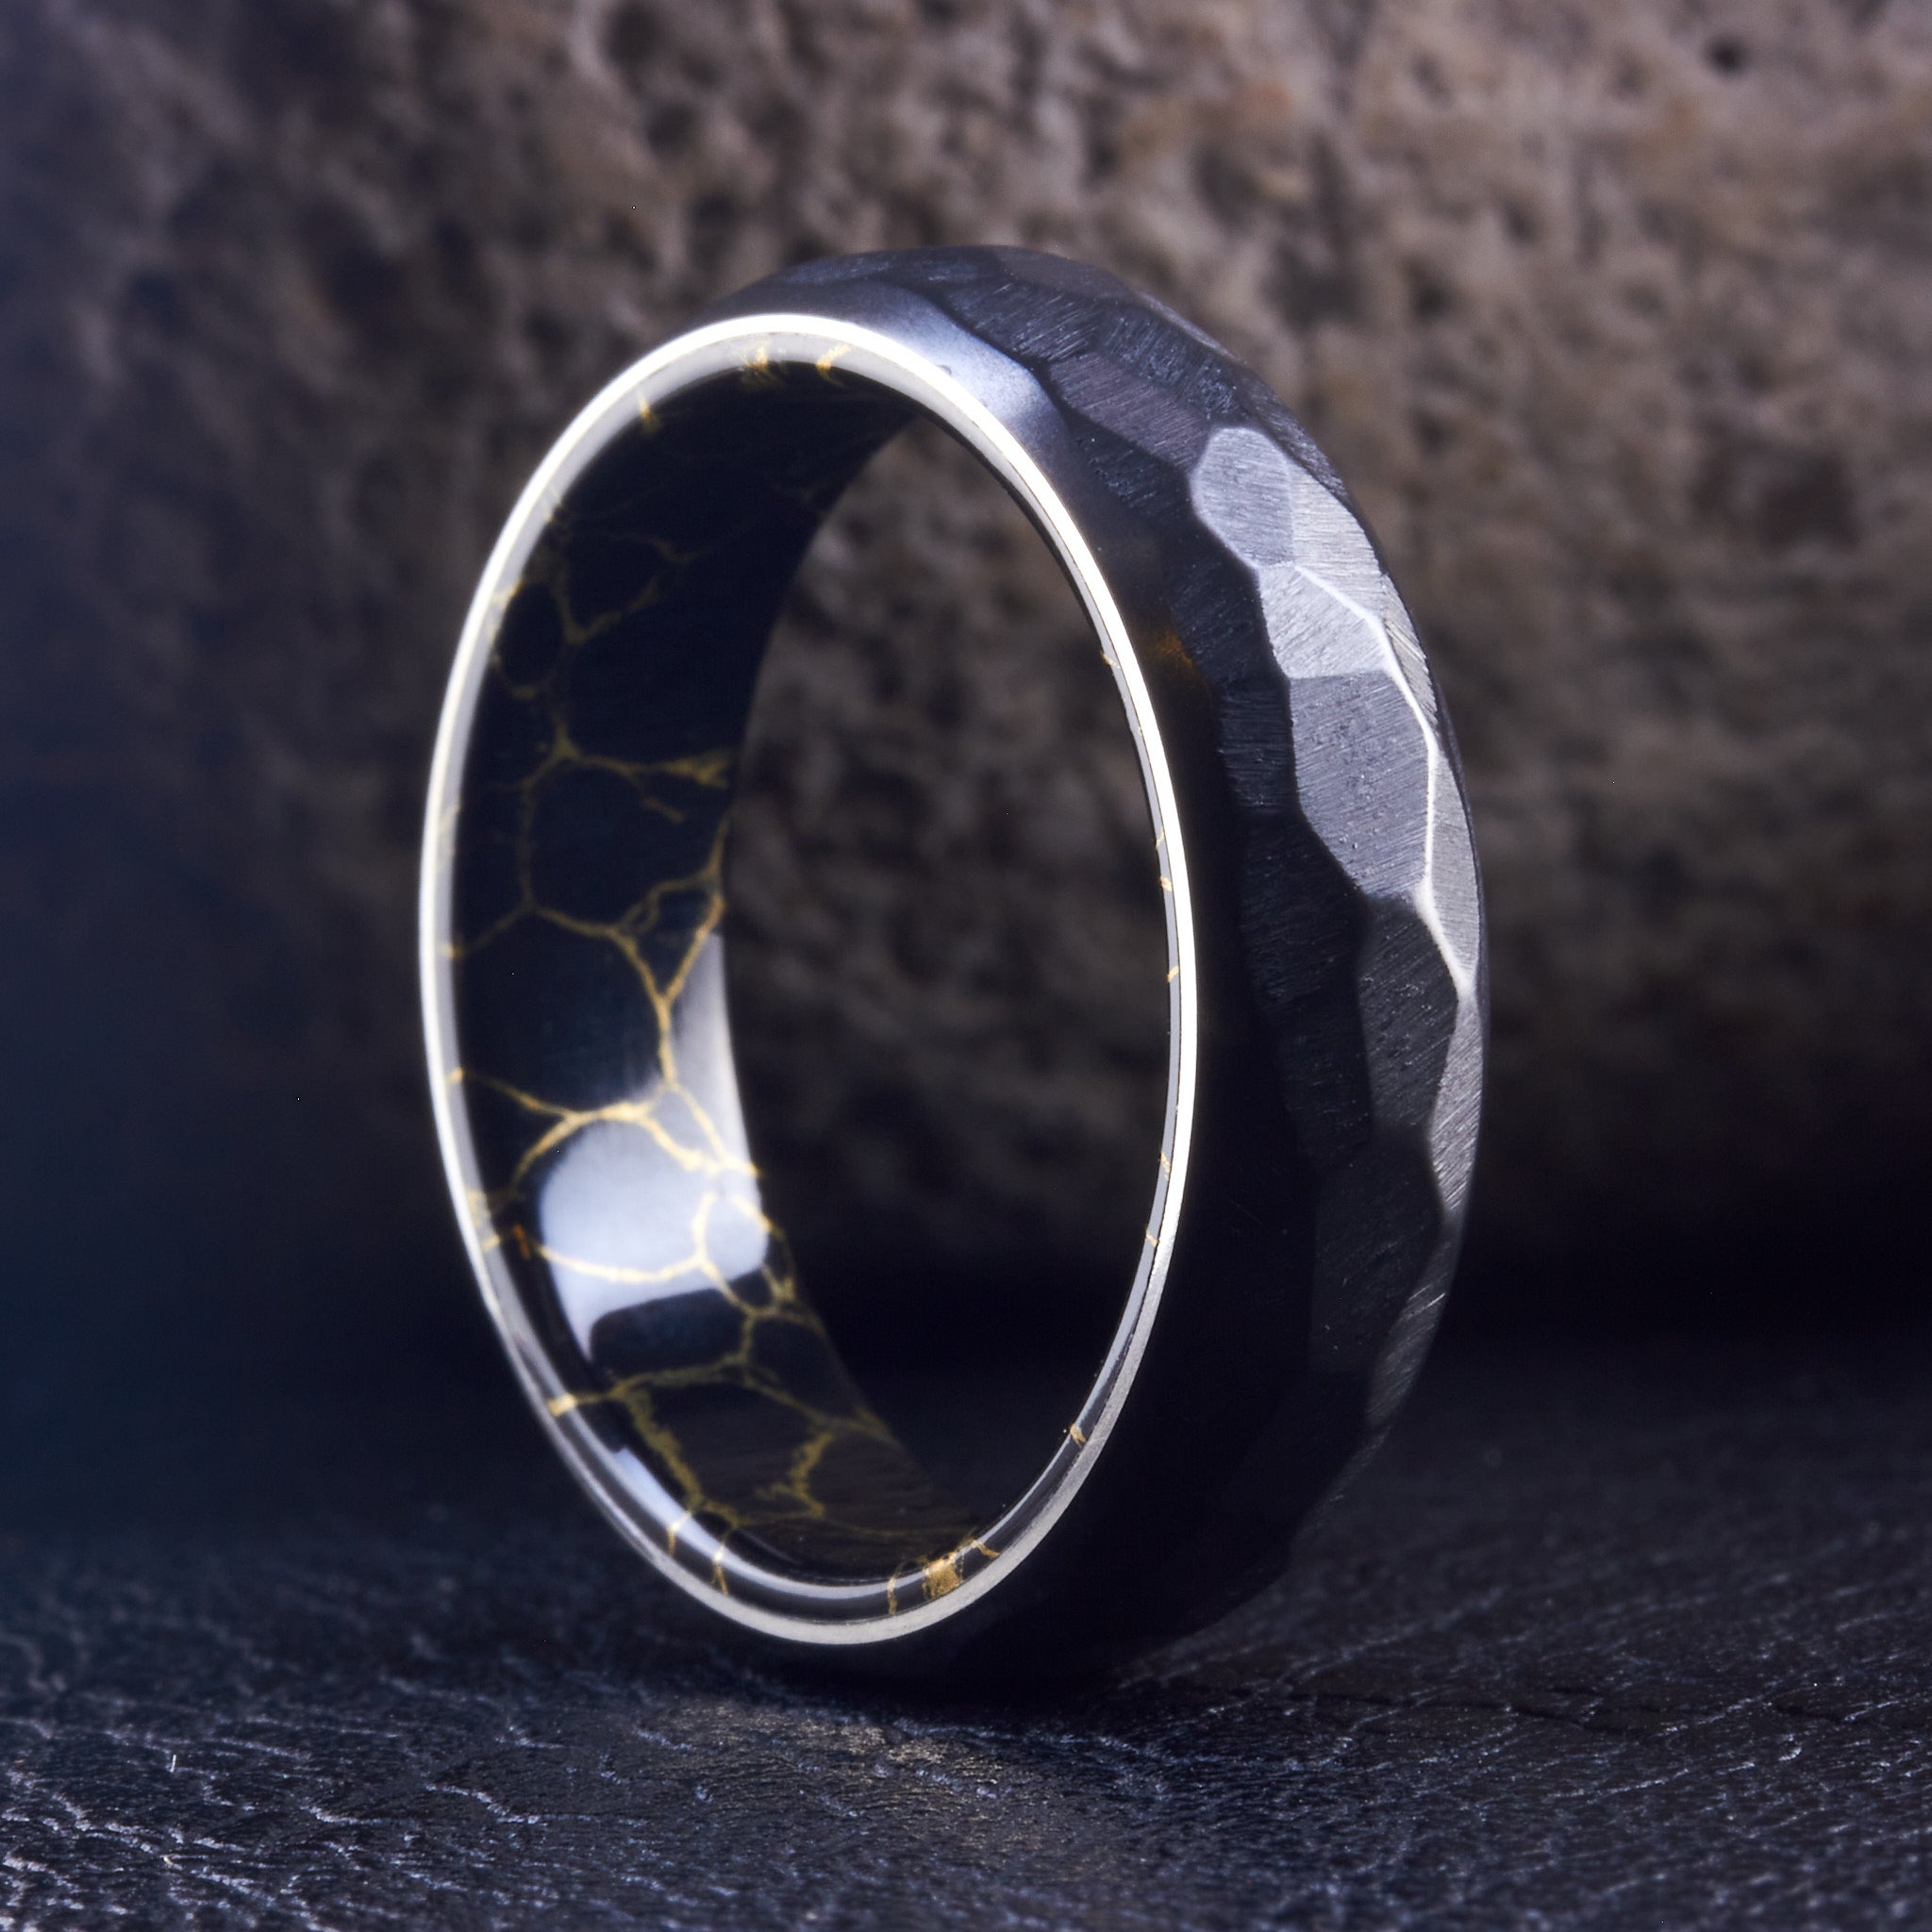 Hammered Black Zirconium & Trustone ring